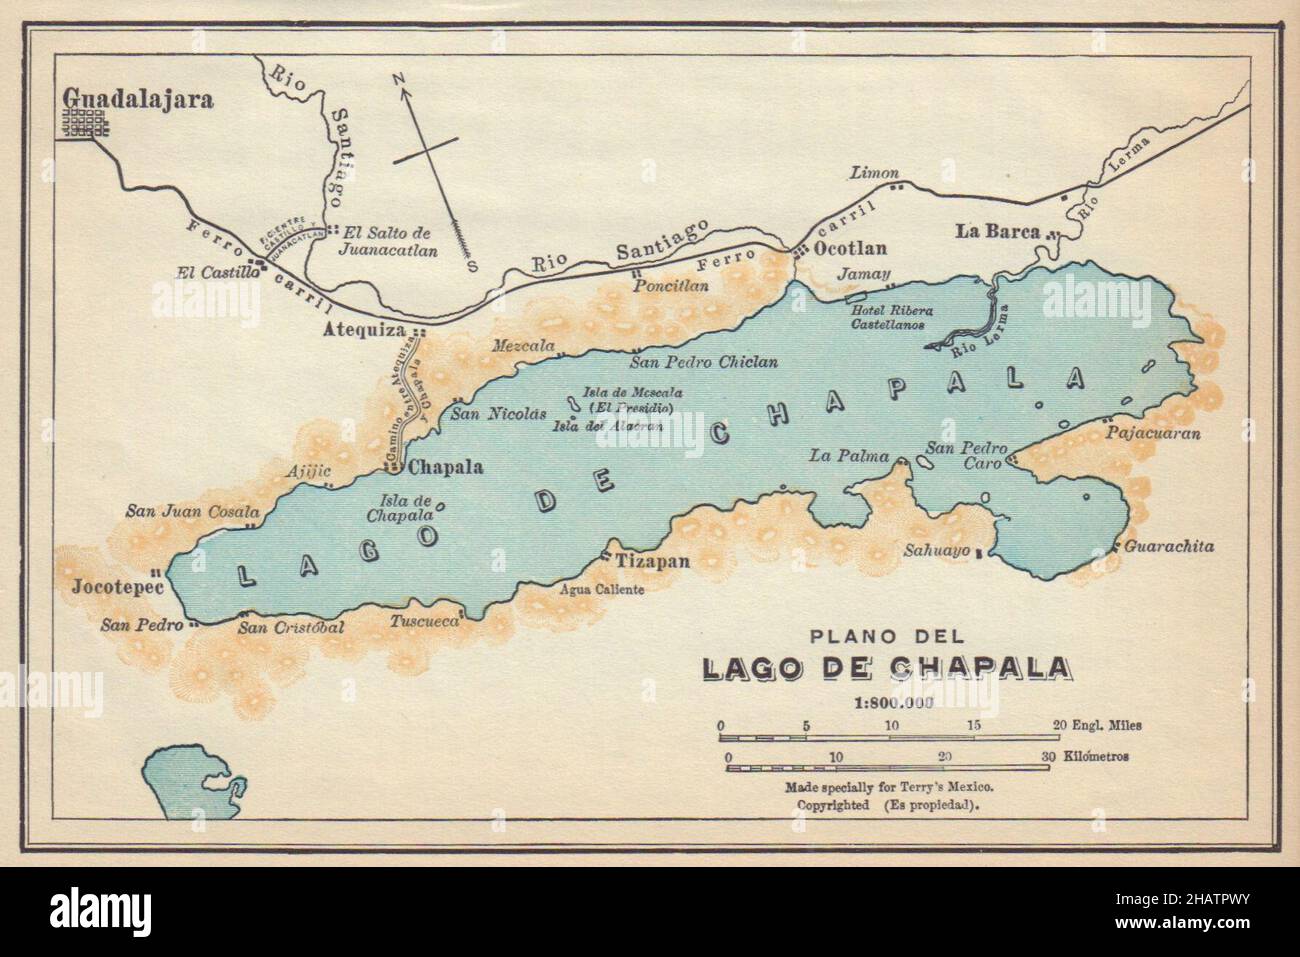 Plano Del Lago De Chapala Mexico Guadalajara 1935 Vieja Carta De Mapas Vintage 2hatpwy 